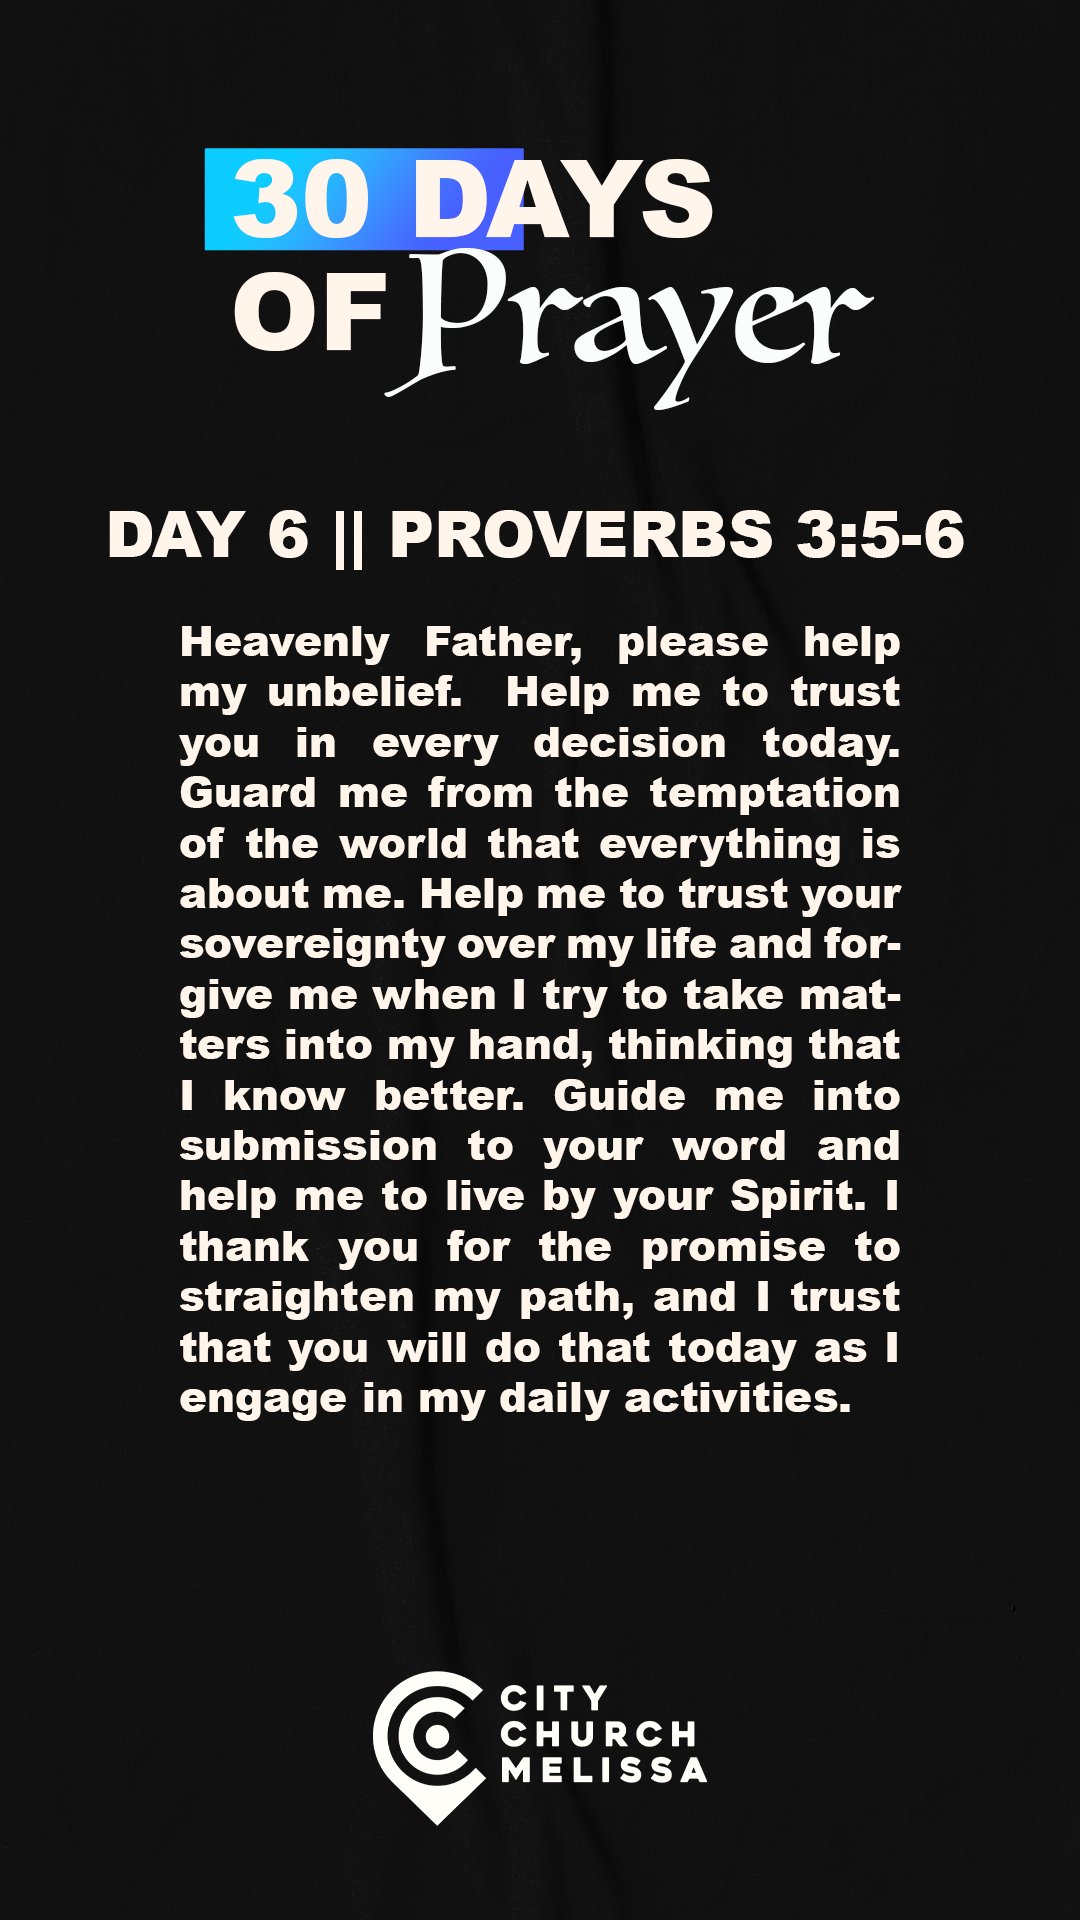 DAY 6 - PRAYER